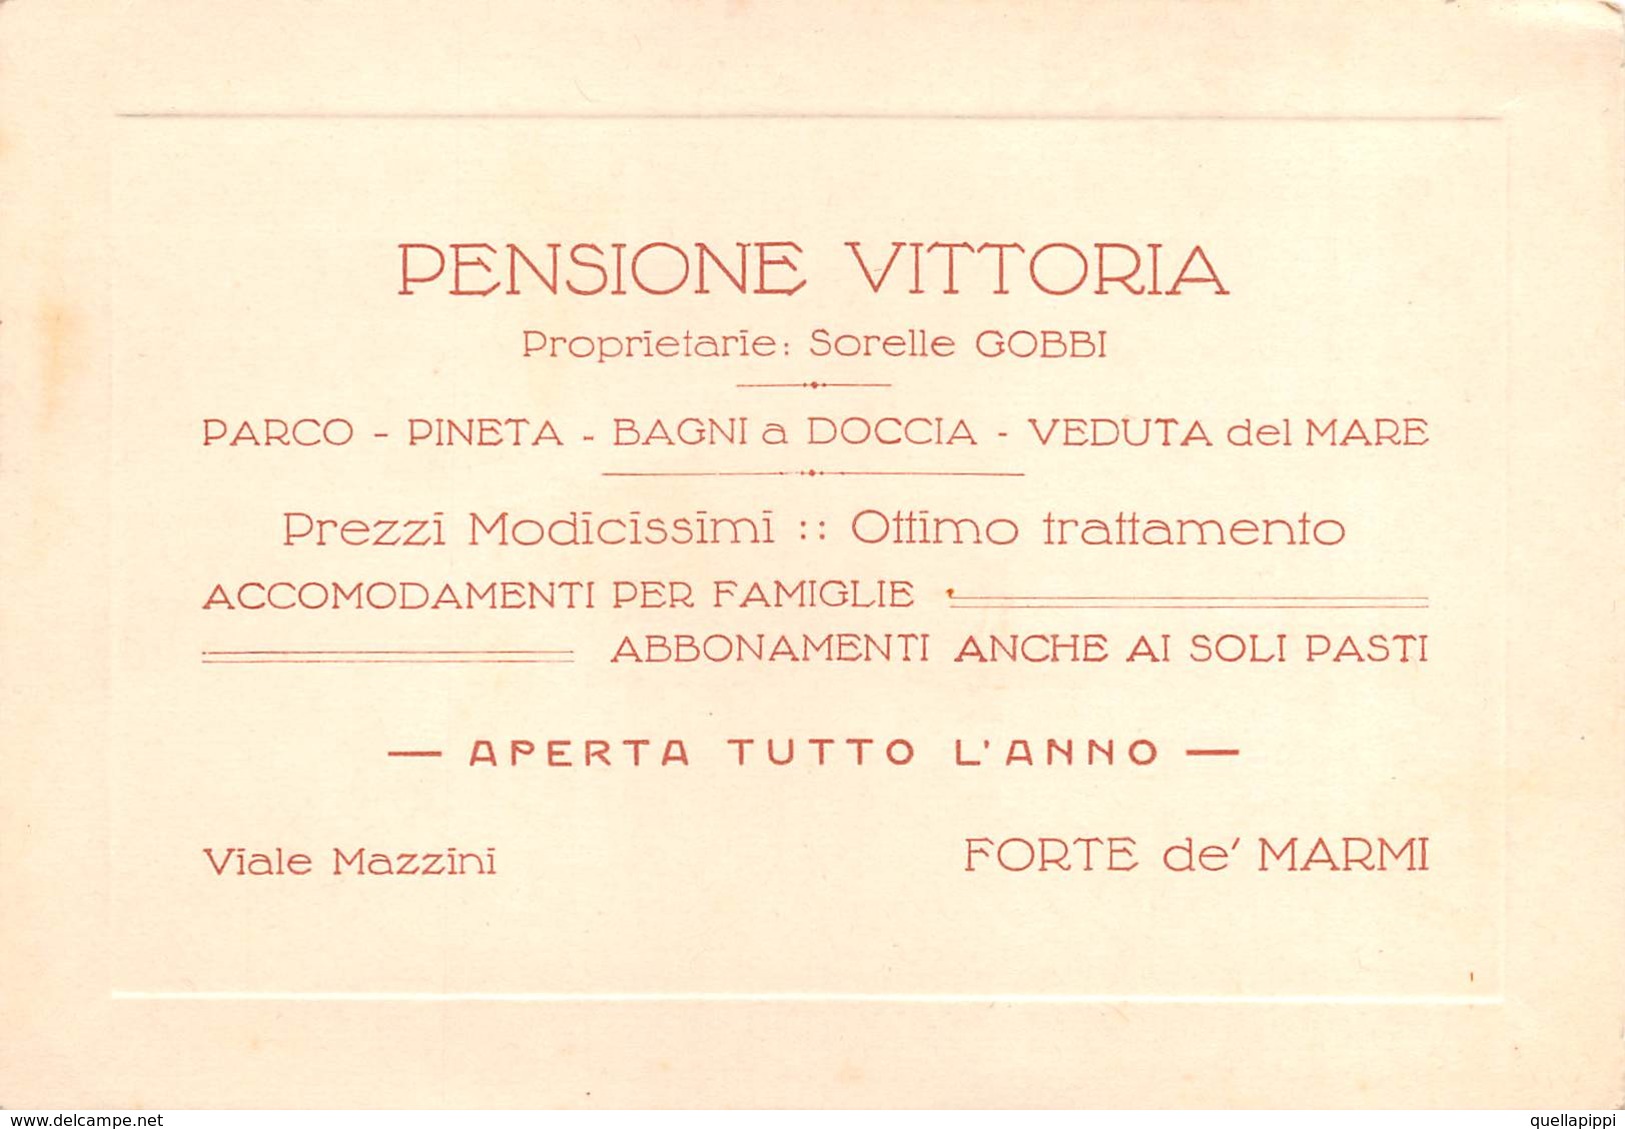 07832 "PENSIONE VITTORIA - PROPR. SORELLE GOBBI - VIALE MAZZINI - FORTE DE' MARMI (LU)" ORIGINALE - Cartoncini Da Visita